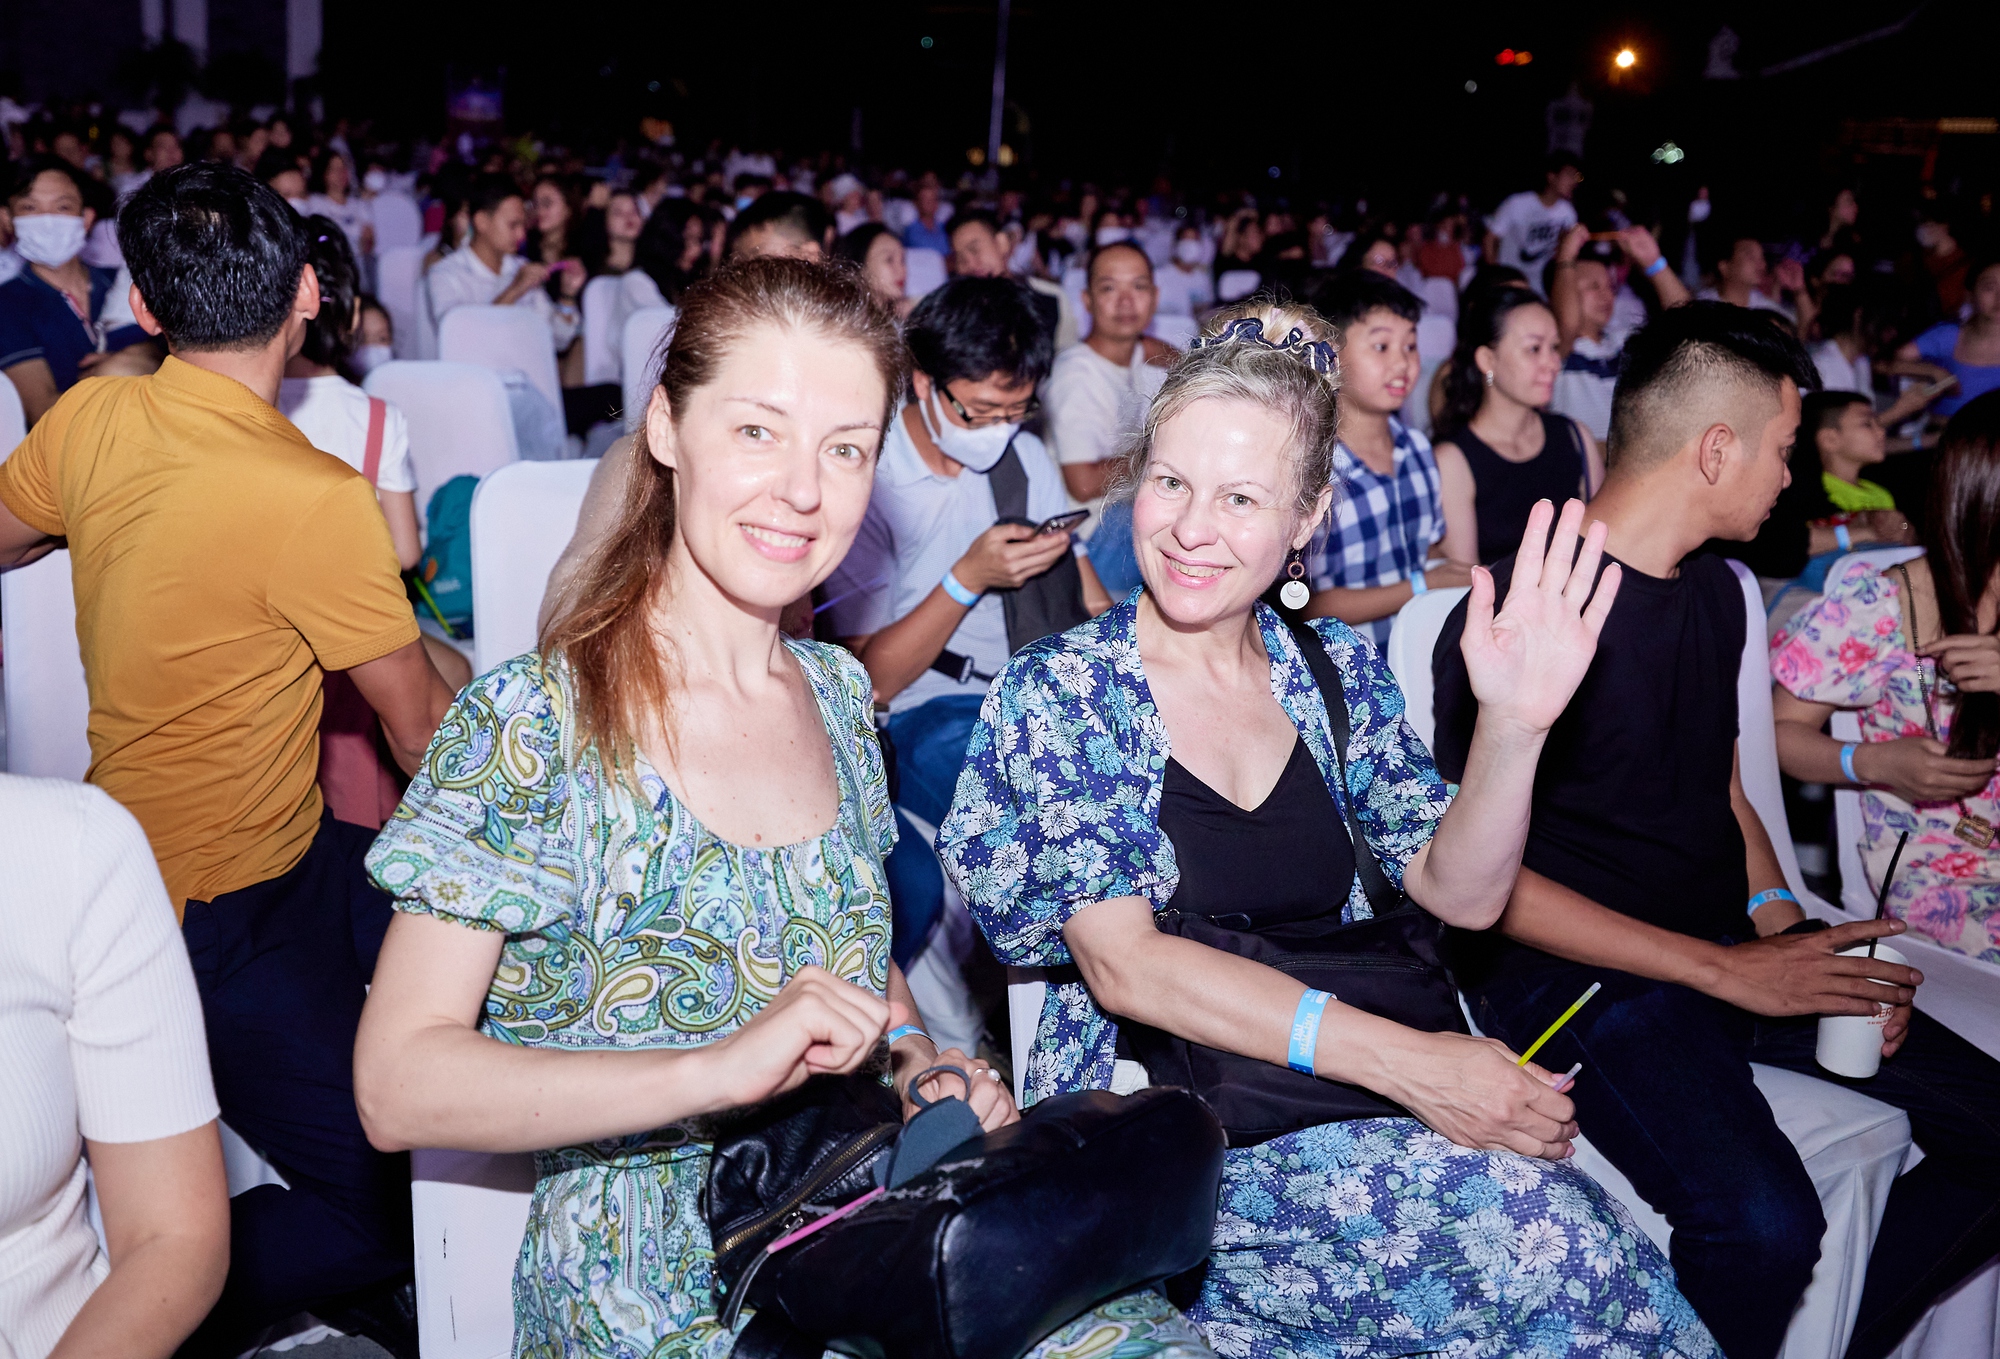 Đà Nẵng: Pháo hoa rực sáng báo hiệu sự hồi sinh của ngành du lịch trong đêm đại nhạc hội - Ảnh 10.